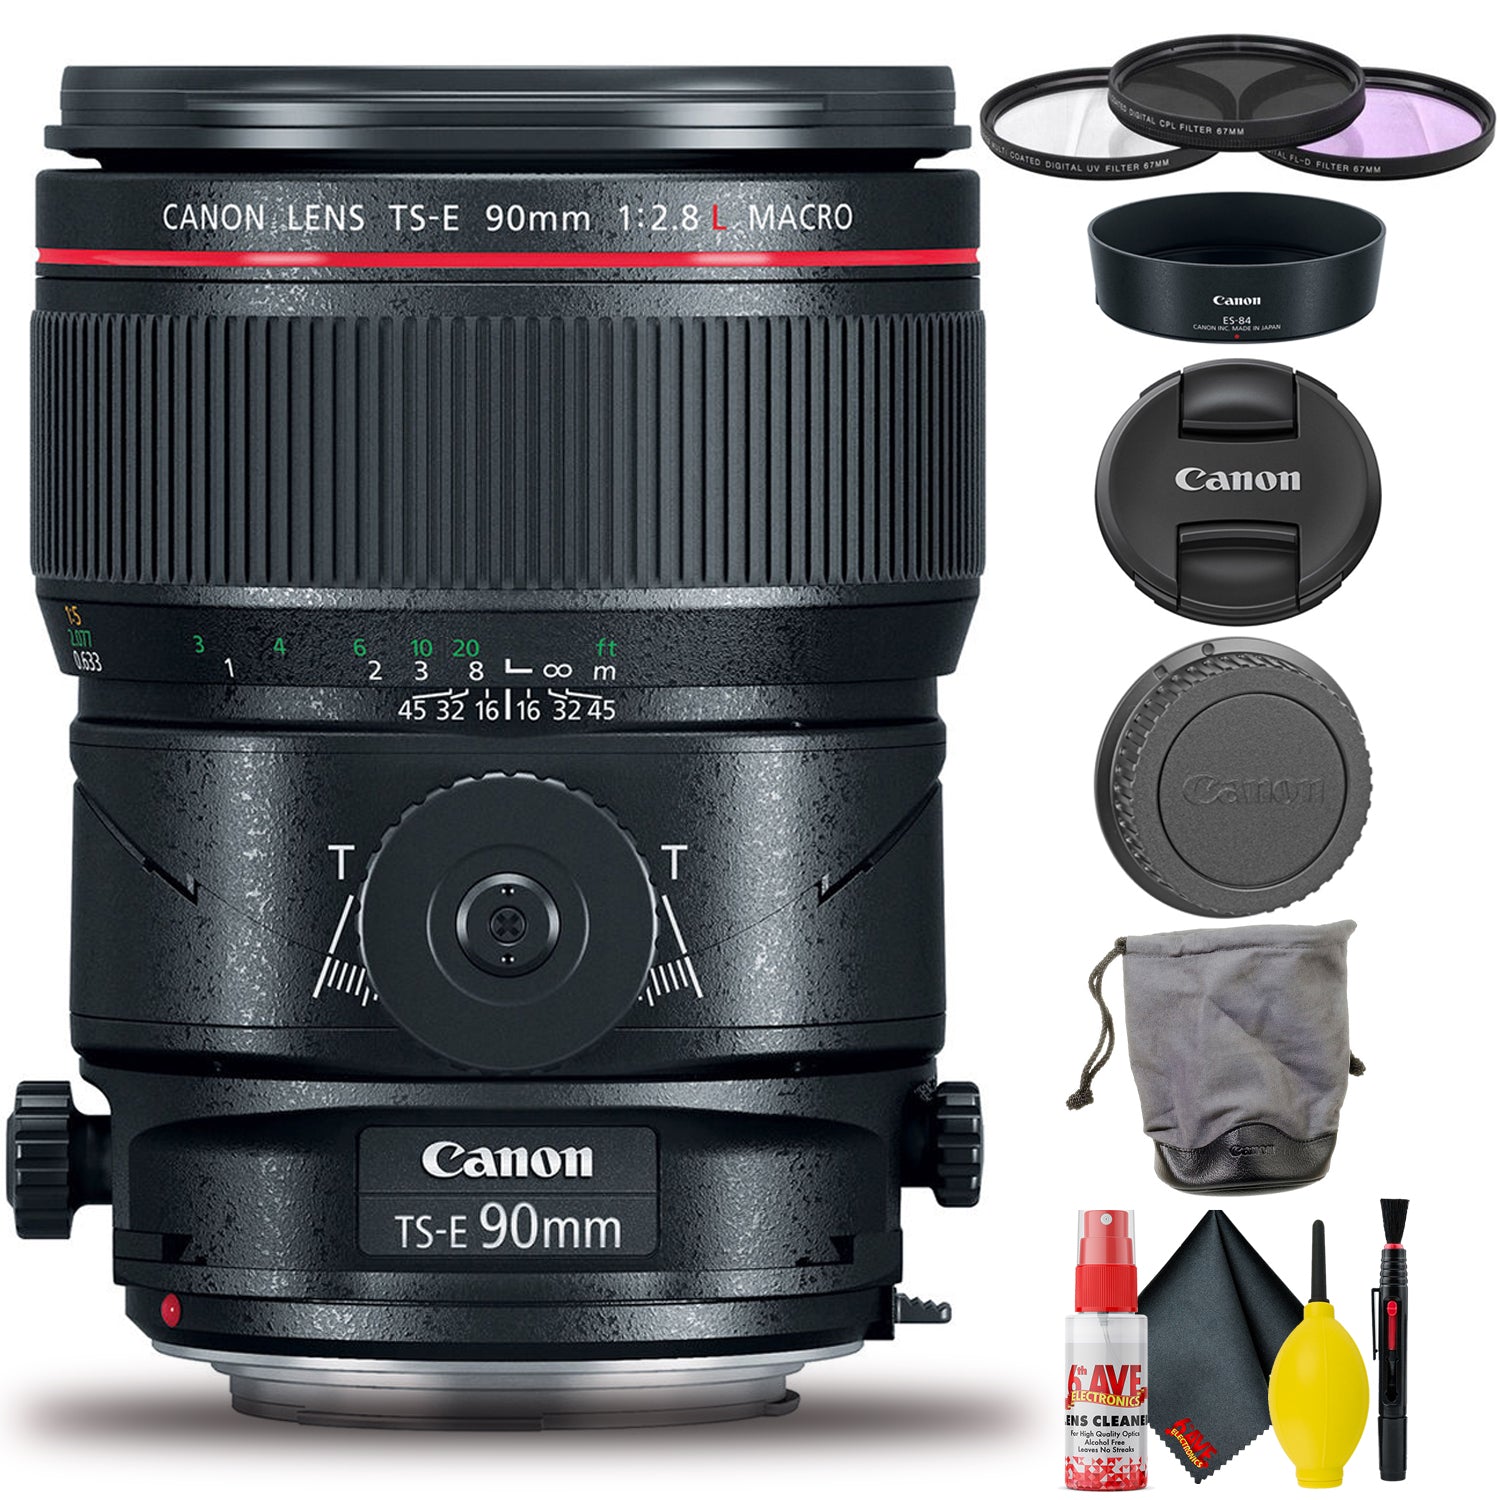 Canon TS-E 90mm f/2.8L Macro Tilt-Shift Lens (Intl Model) Includes Filter Set